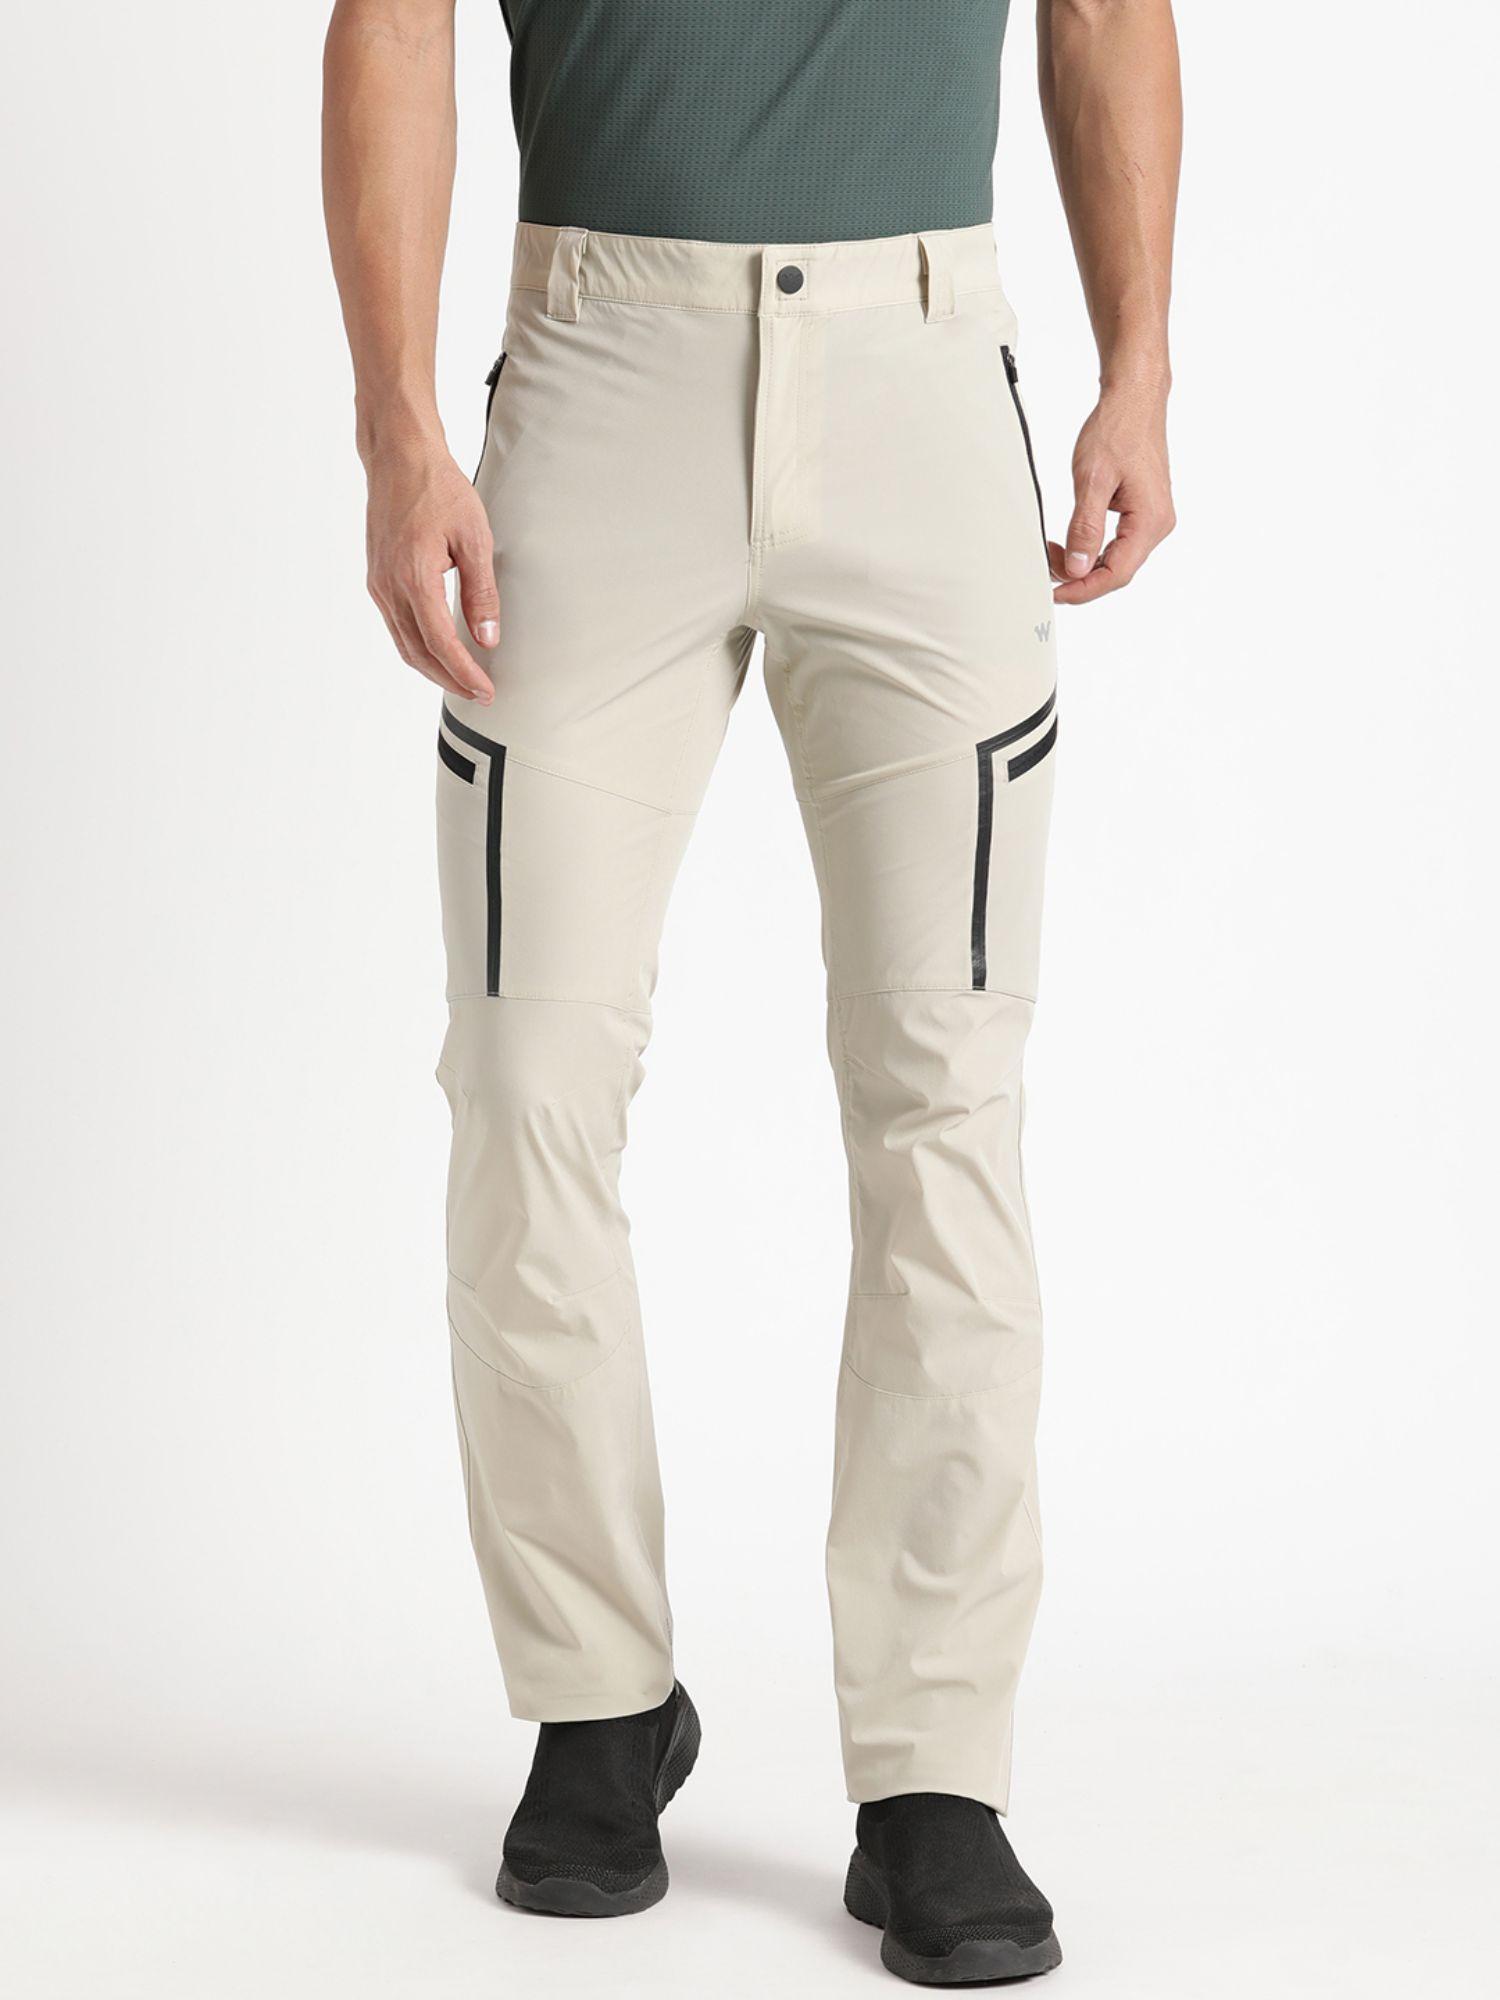 k2 5 pocket hiking pants-beige